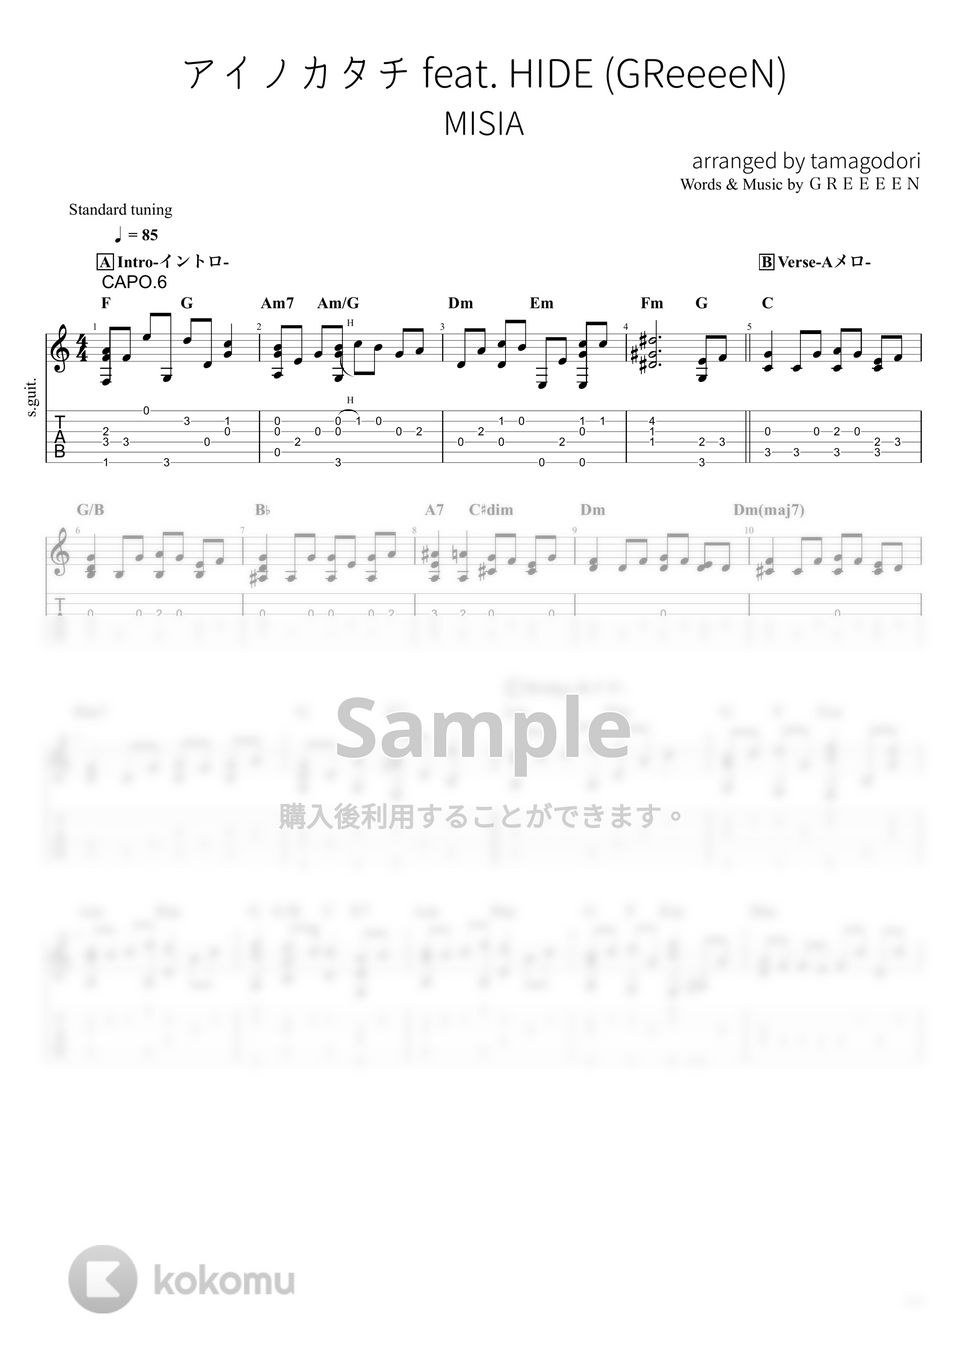 MISIA - アイノカタチ Feat. HIDE(Greeeen) (ソロギター) by たまごどり